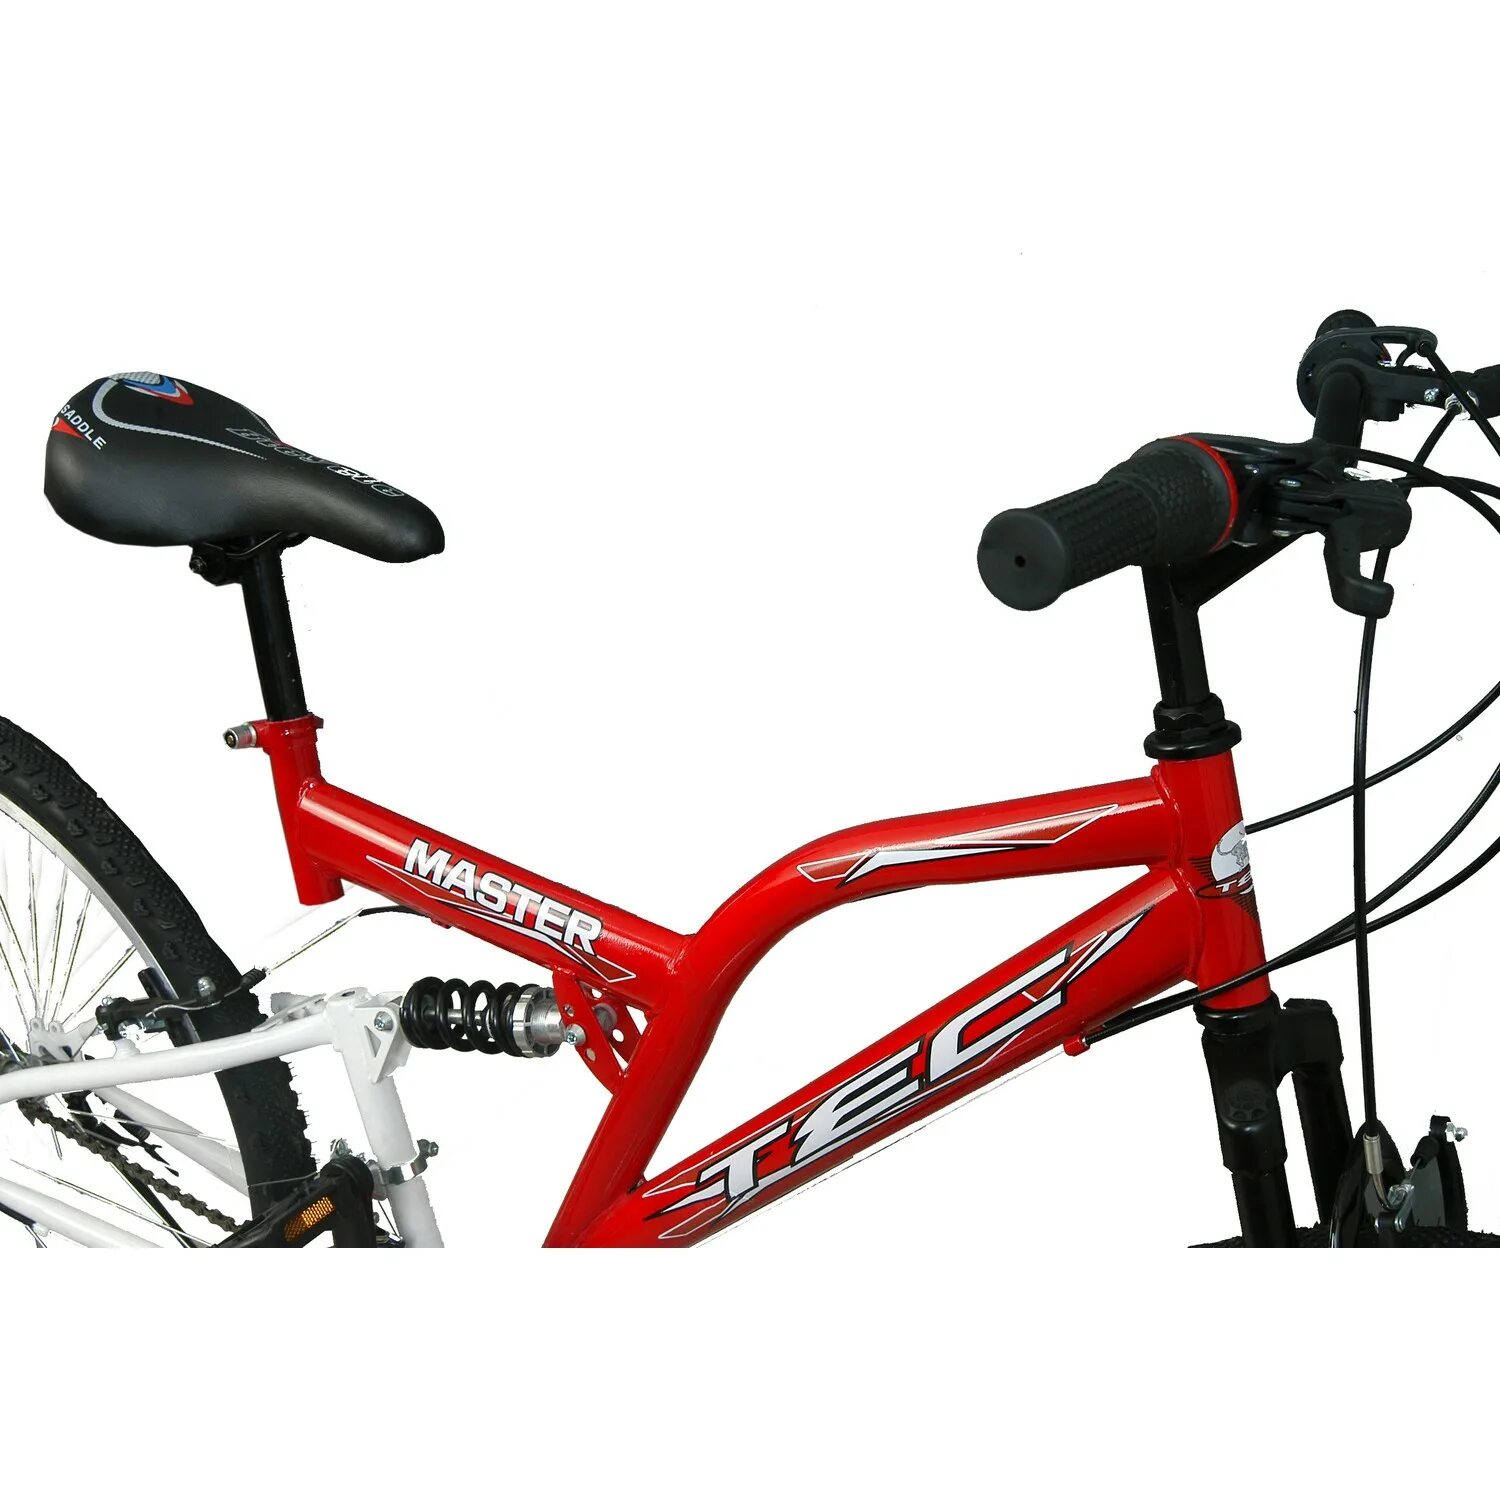 Велосипед Belderia Tec Titan 26 (Black/Red). Belderia. Corsa High quality Profi Tec. Лого Belderia.